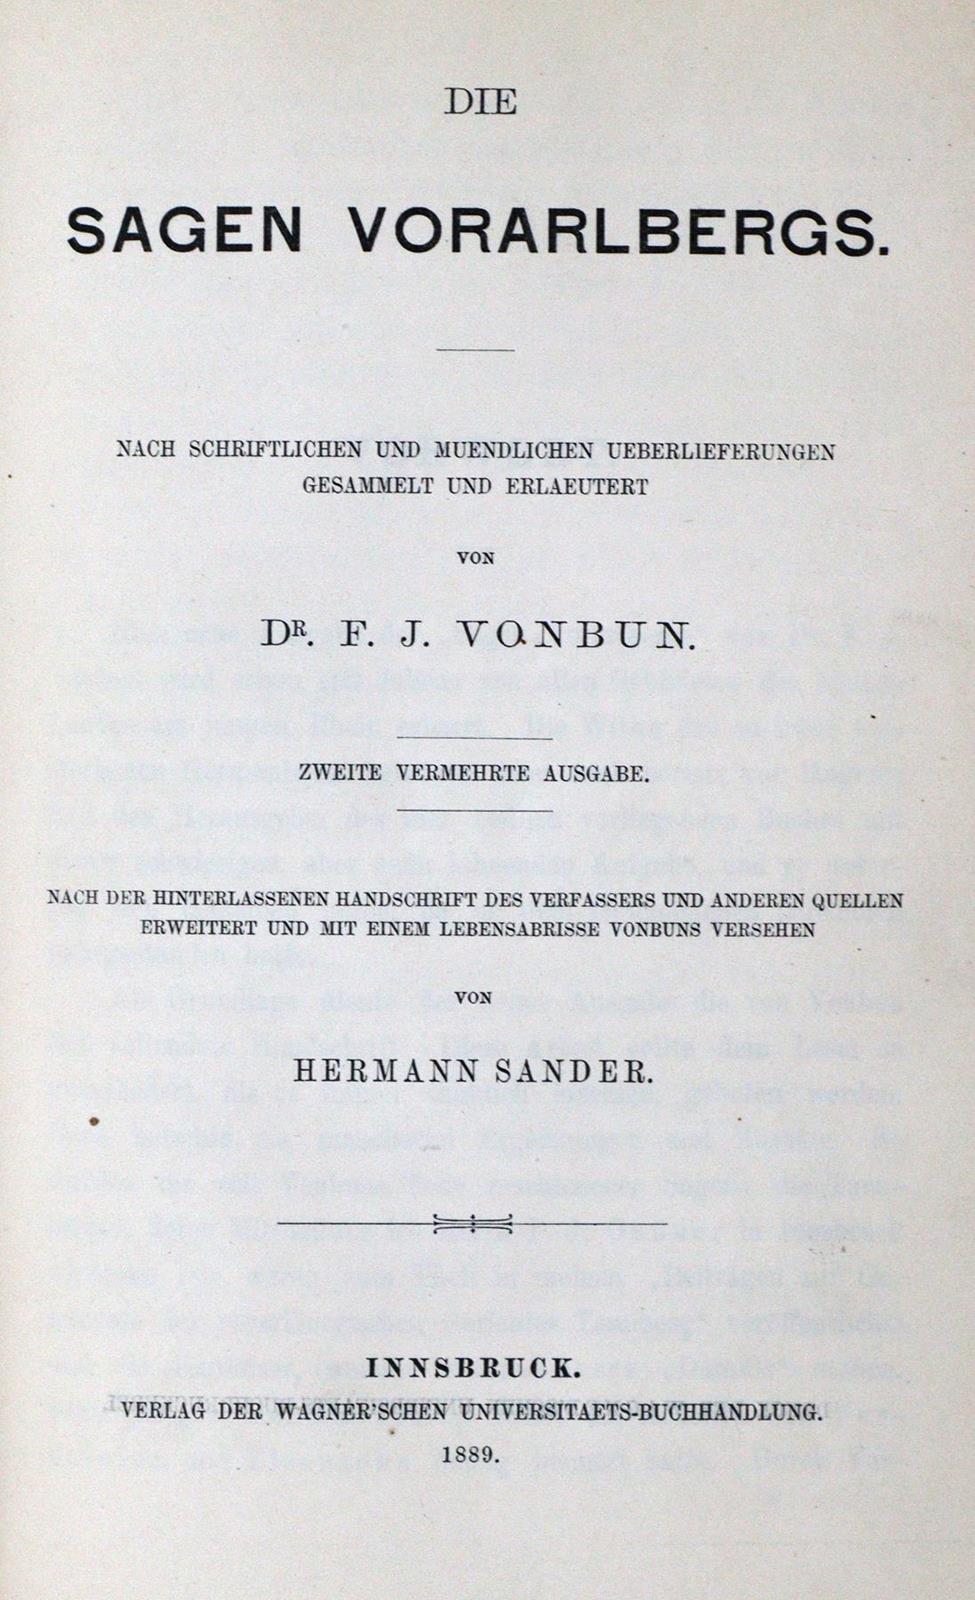 Vonbun,F.J. | Bild Nr.1